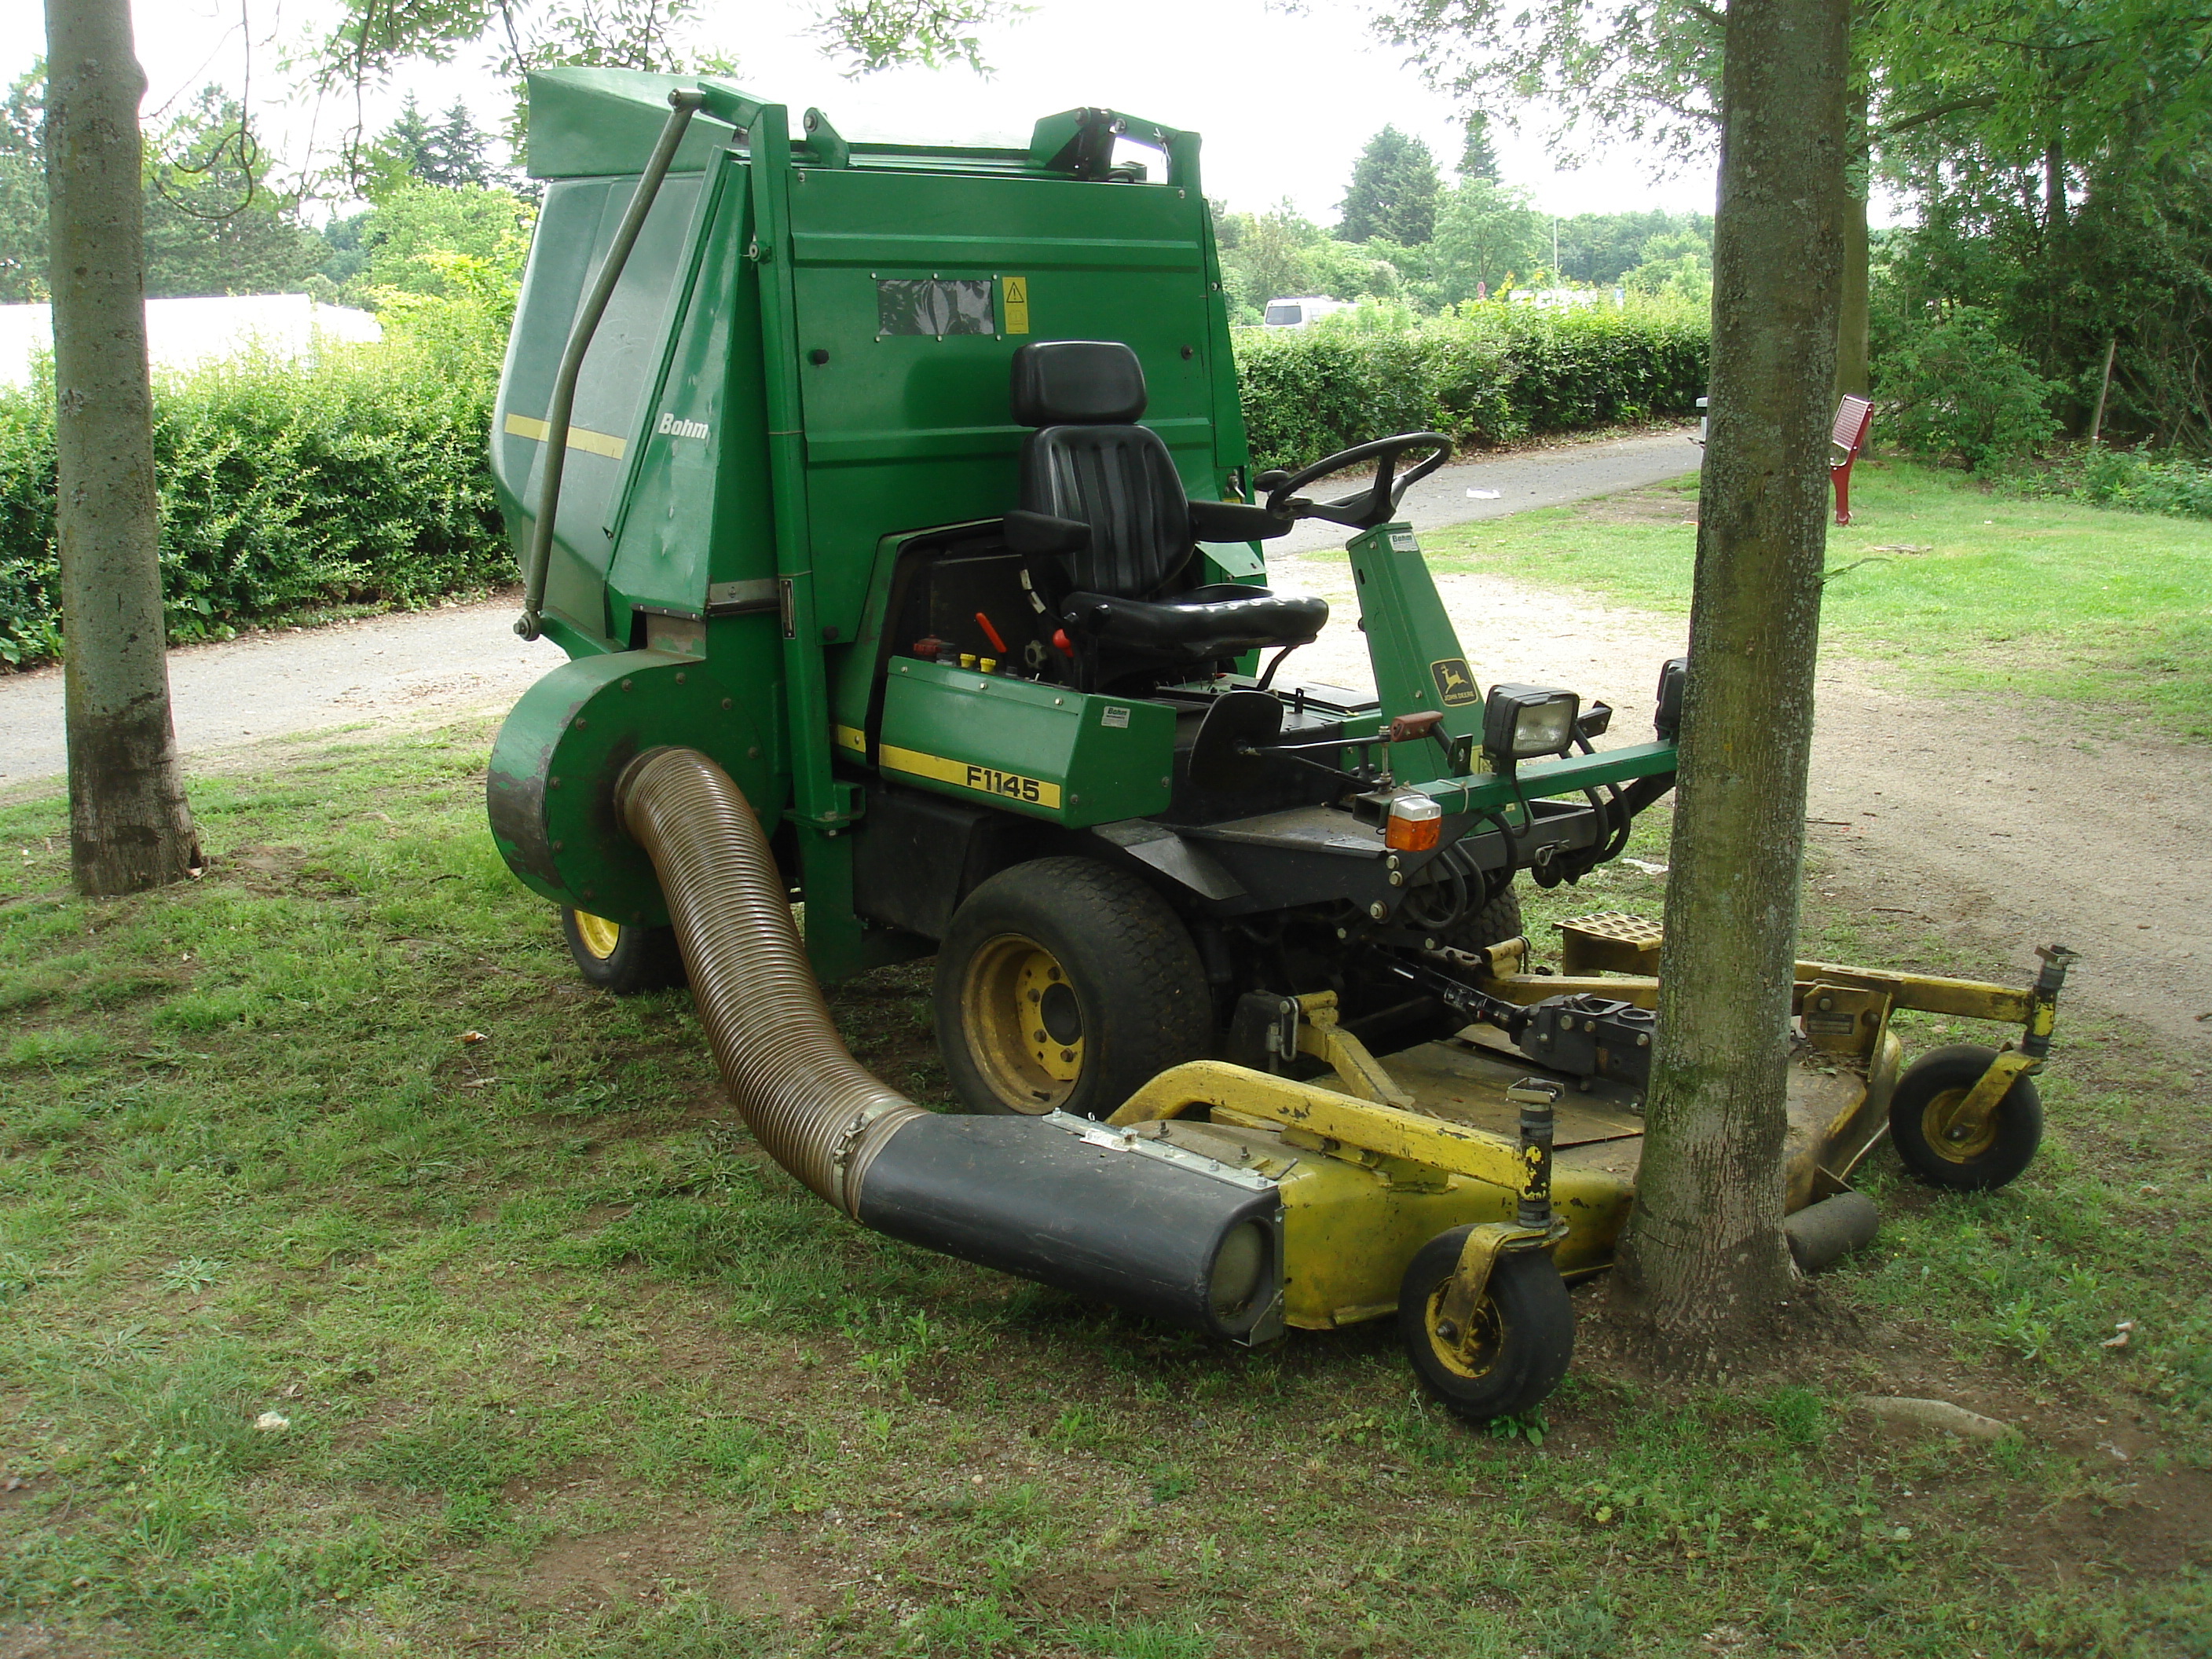 File:John Deere Tractor Lawnmower F1145 3.JPG - Wikimedia Commons